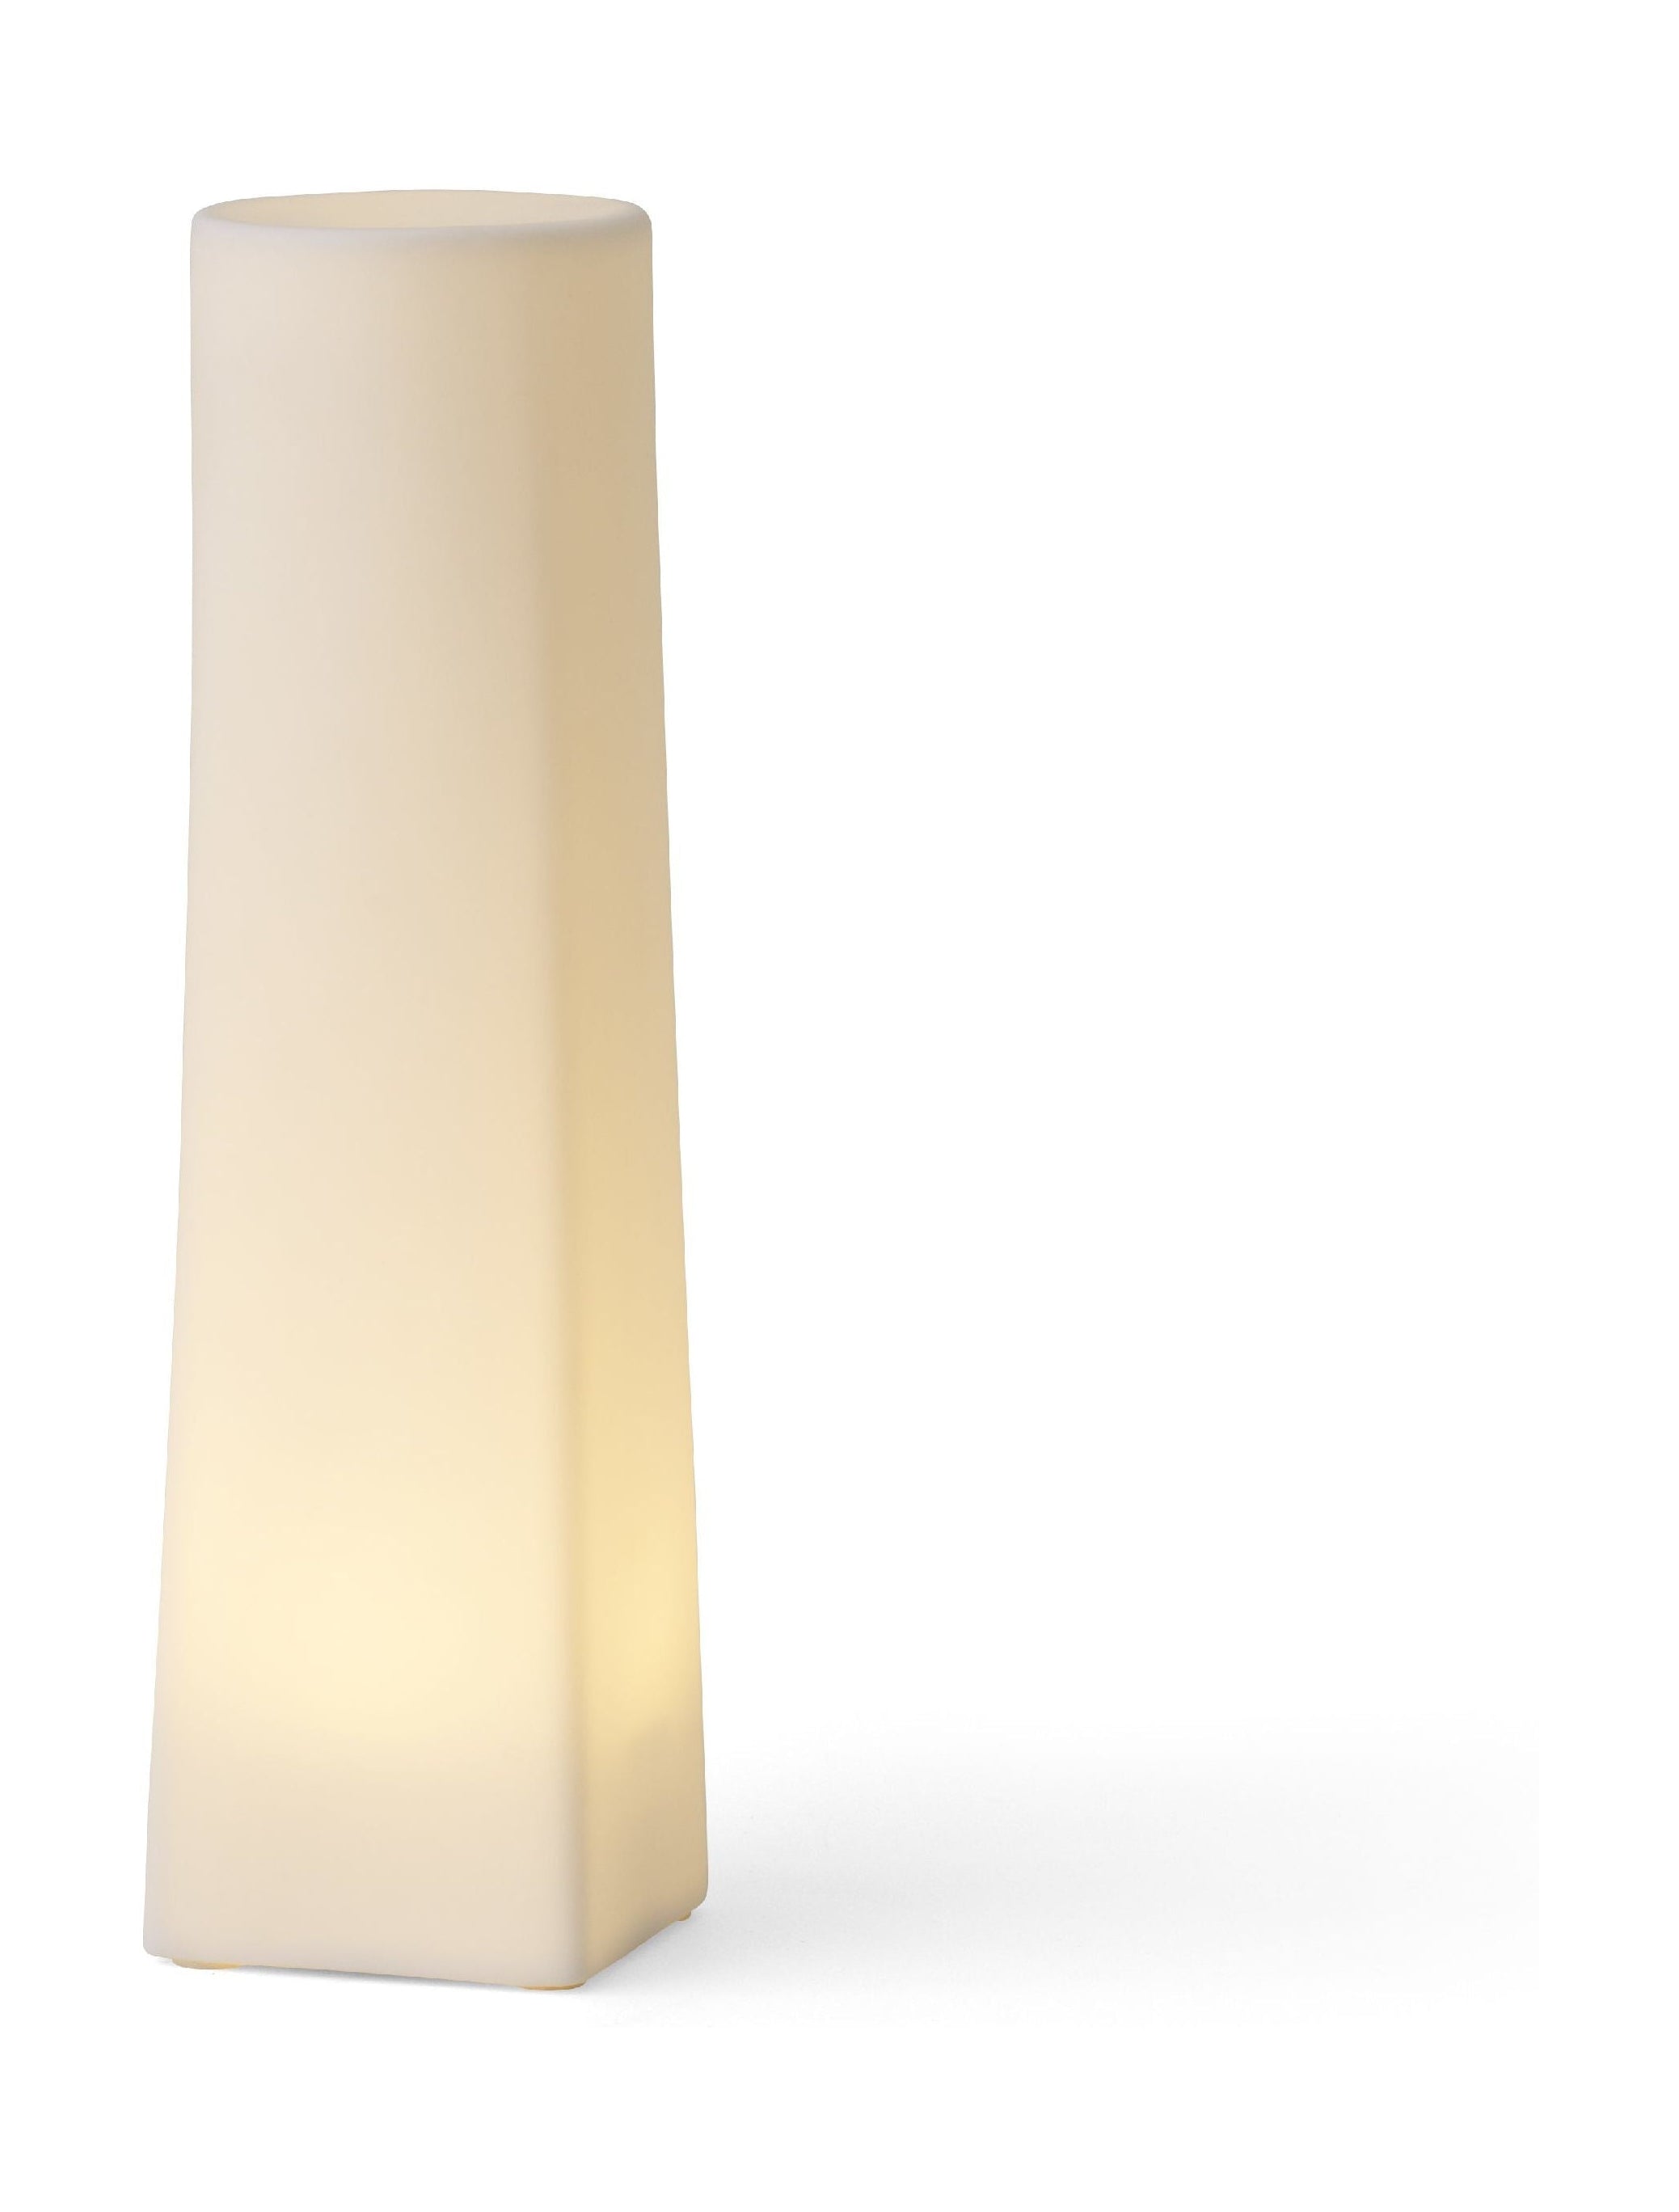 Audo Copenhagen Ignus -LED -Kerze, 22,5 cm